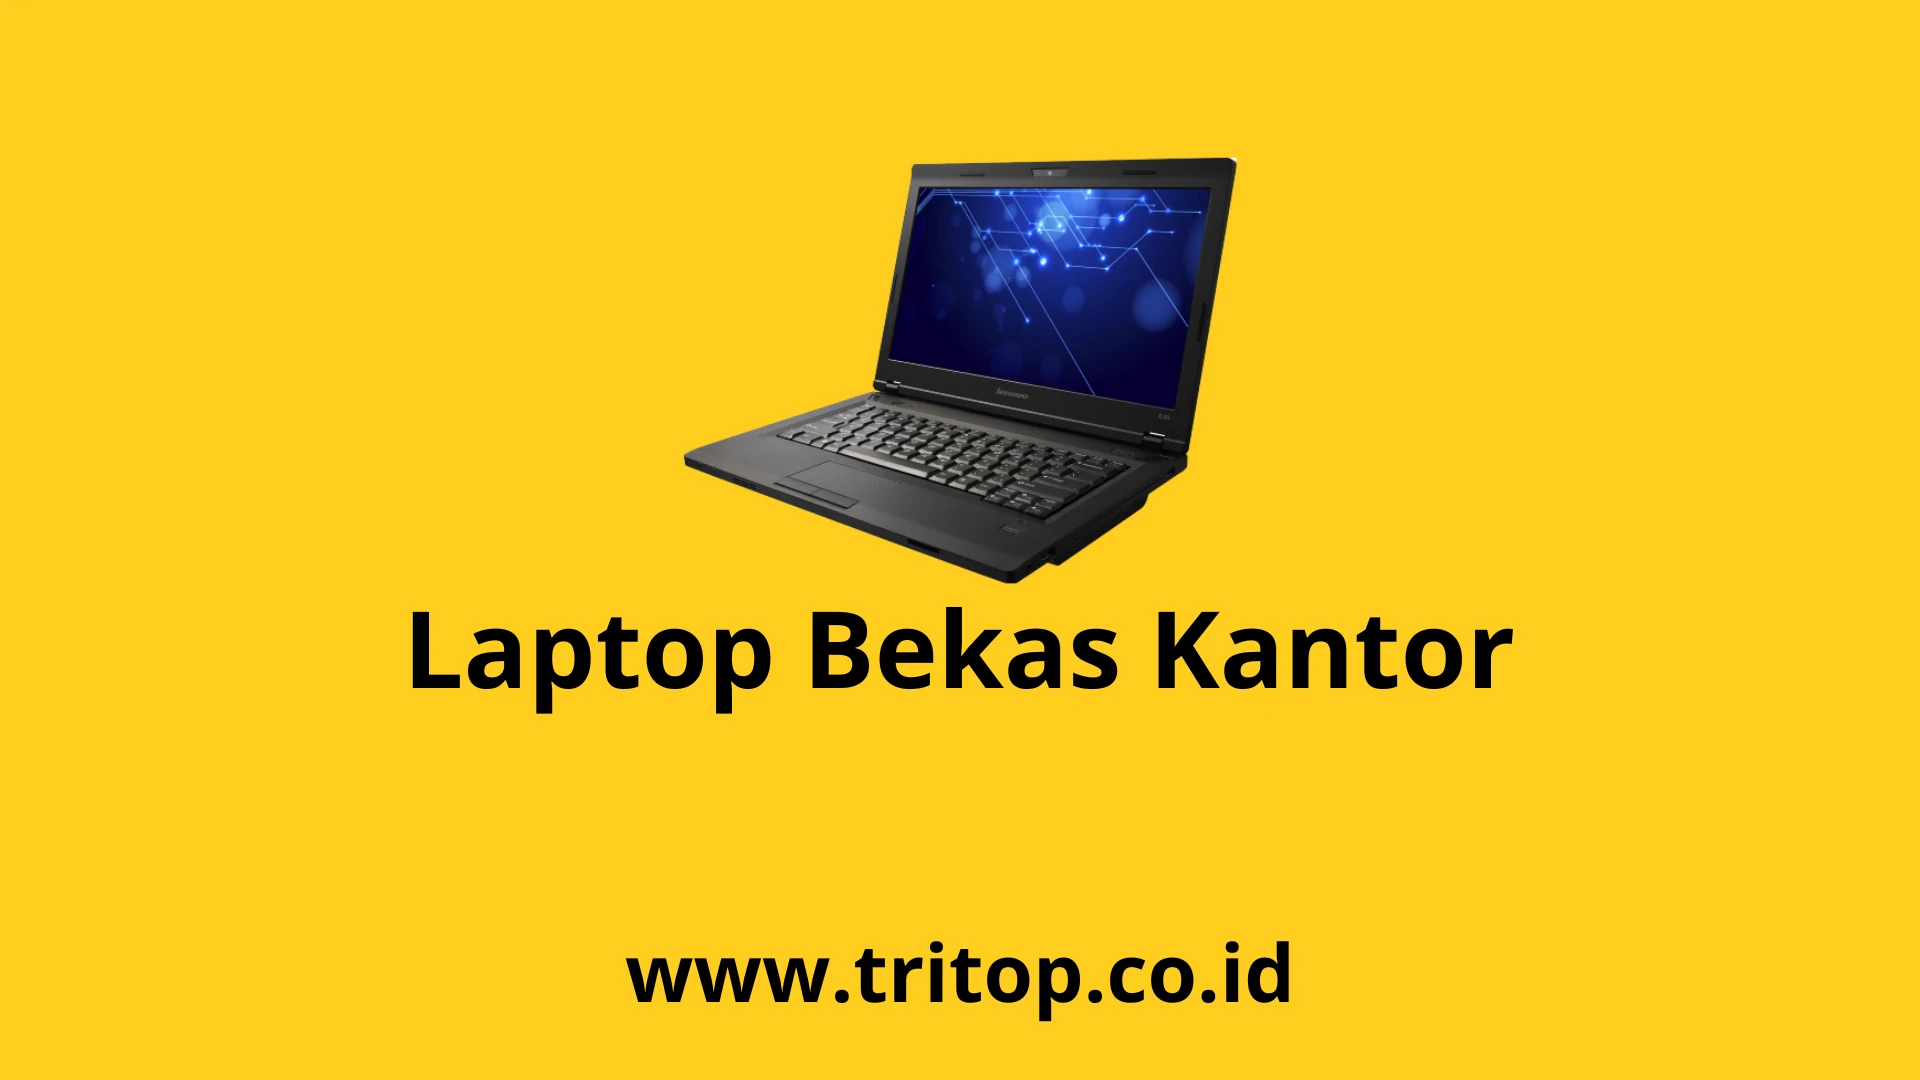 Laptop Bekas Kantor Tritop.co.id